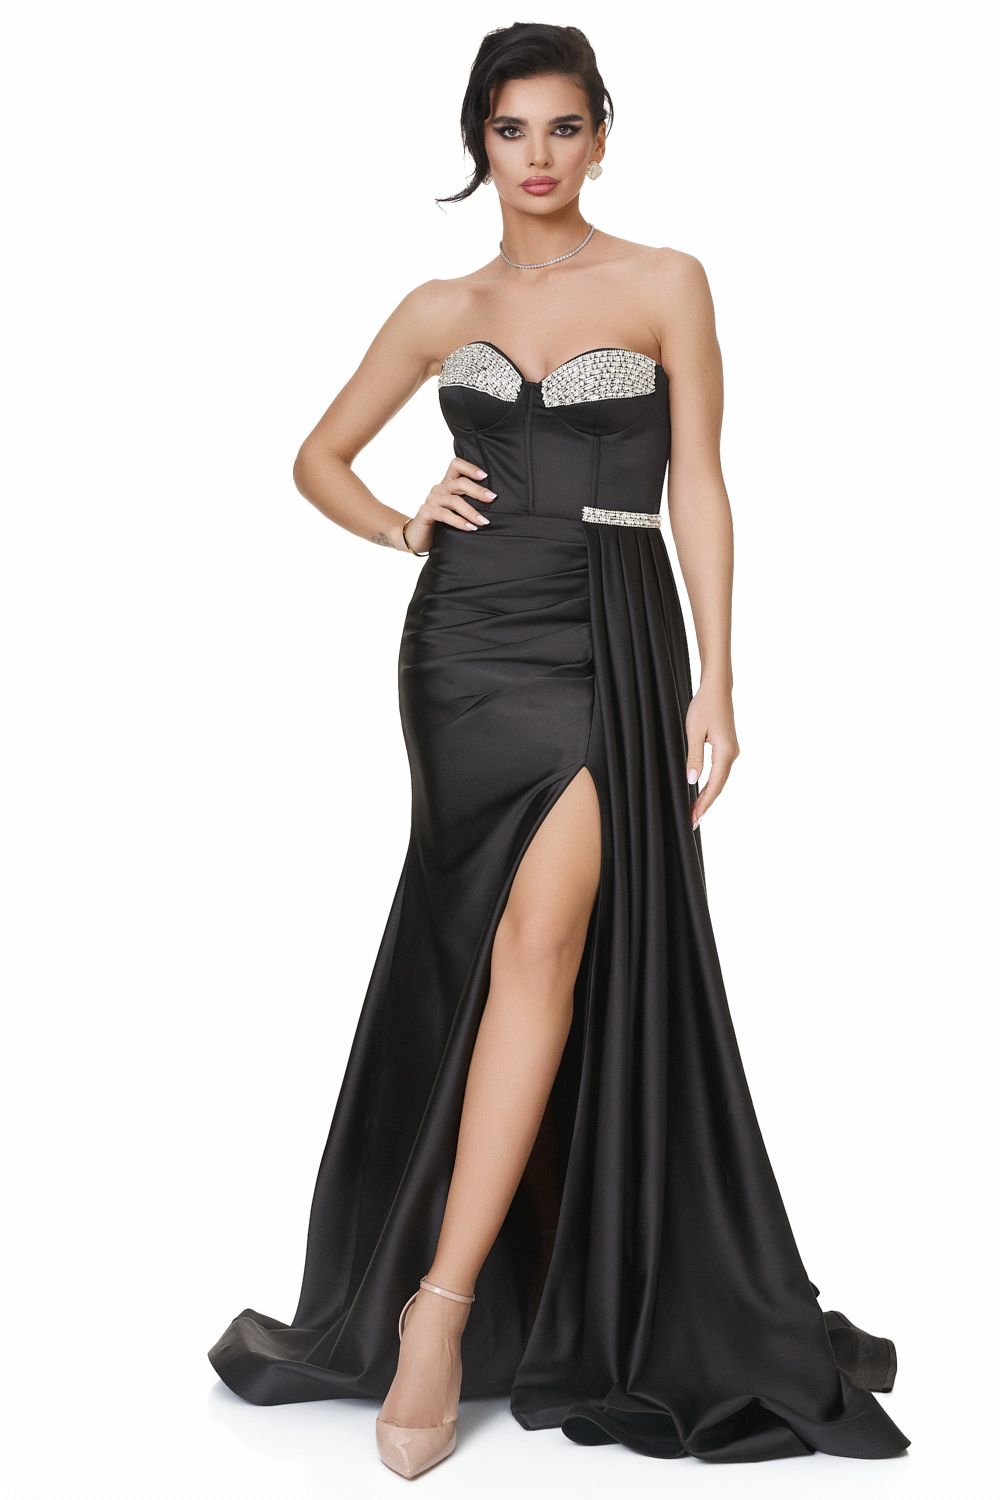 Venetzia Bogas long black dress for women